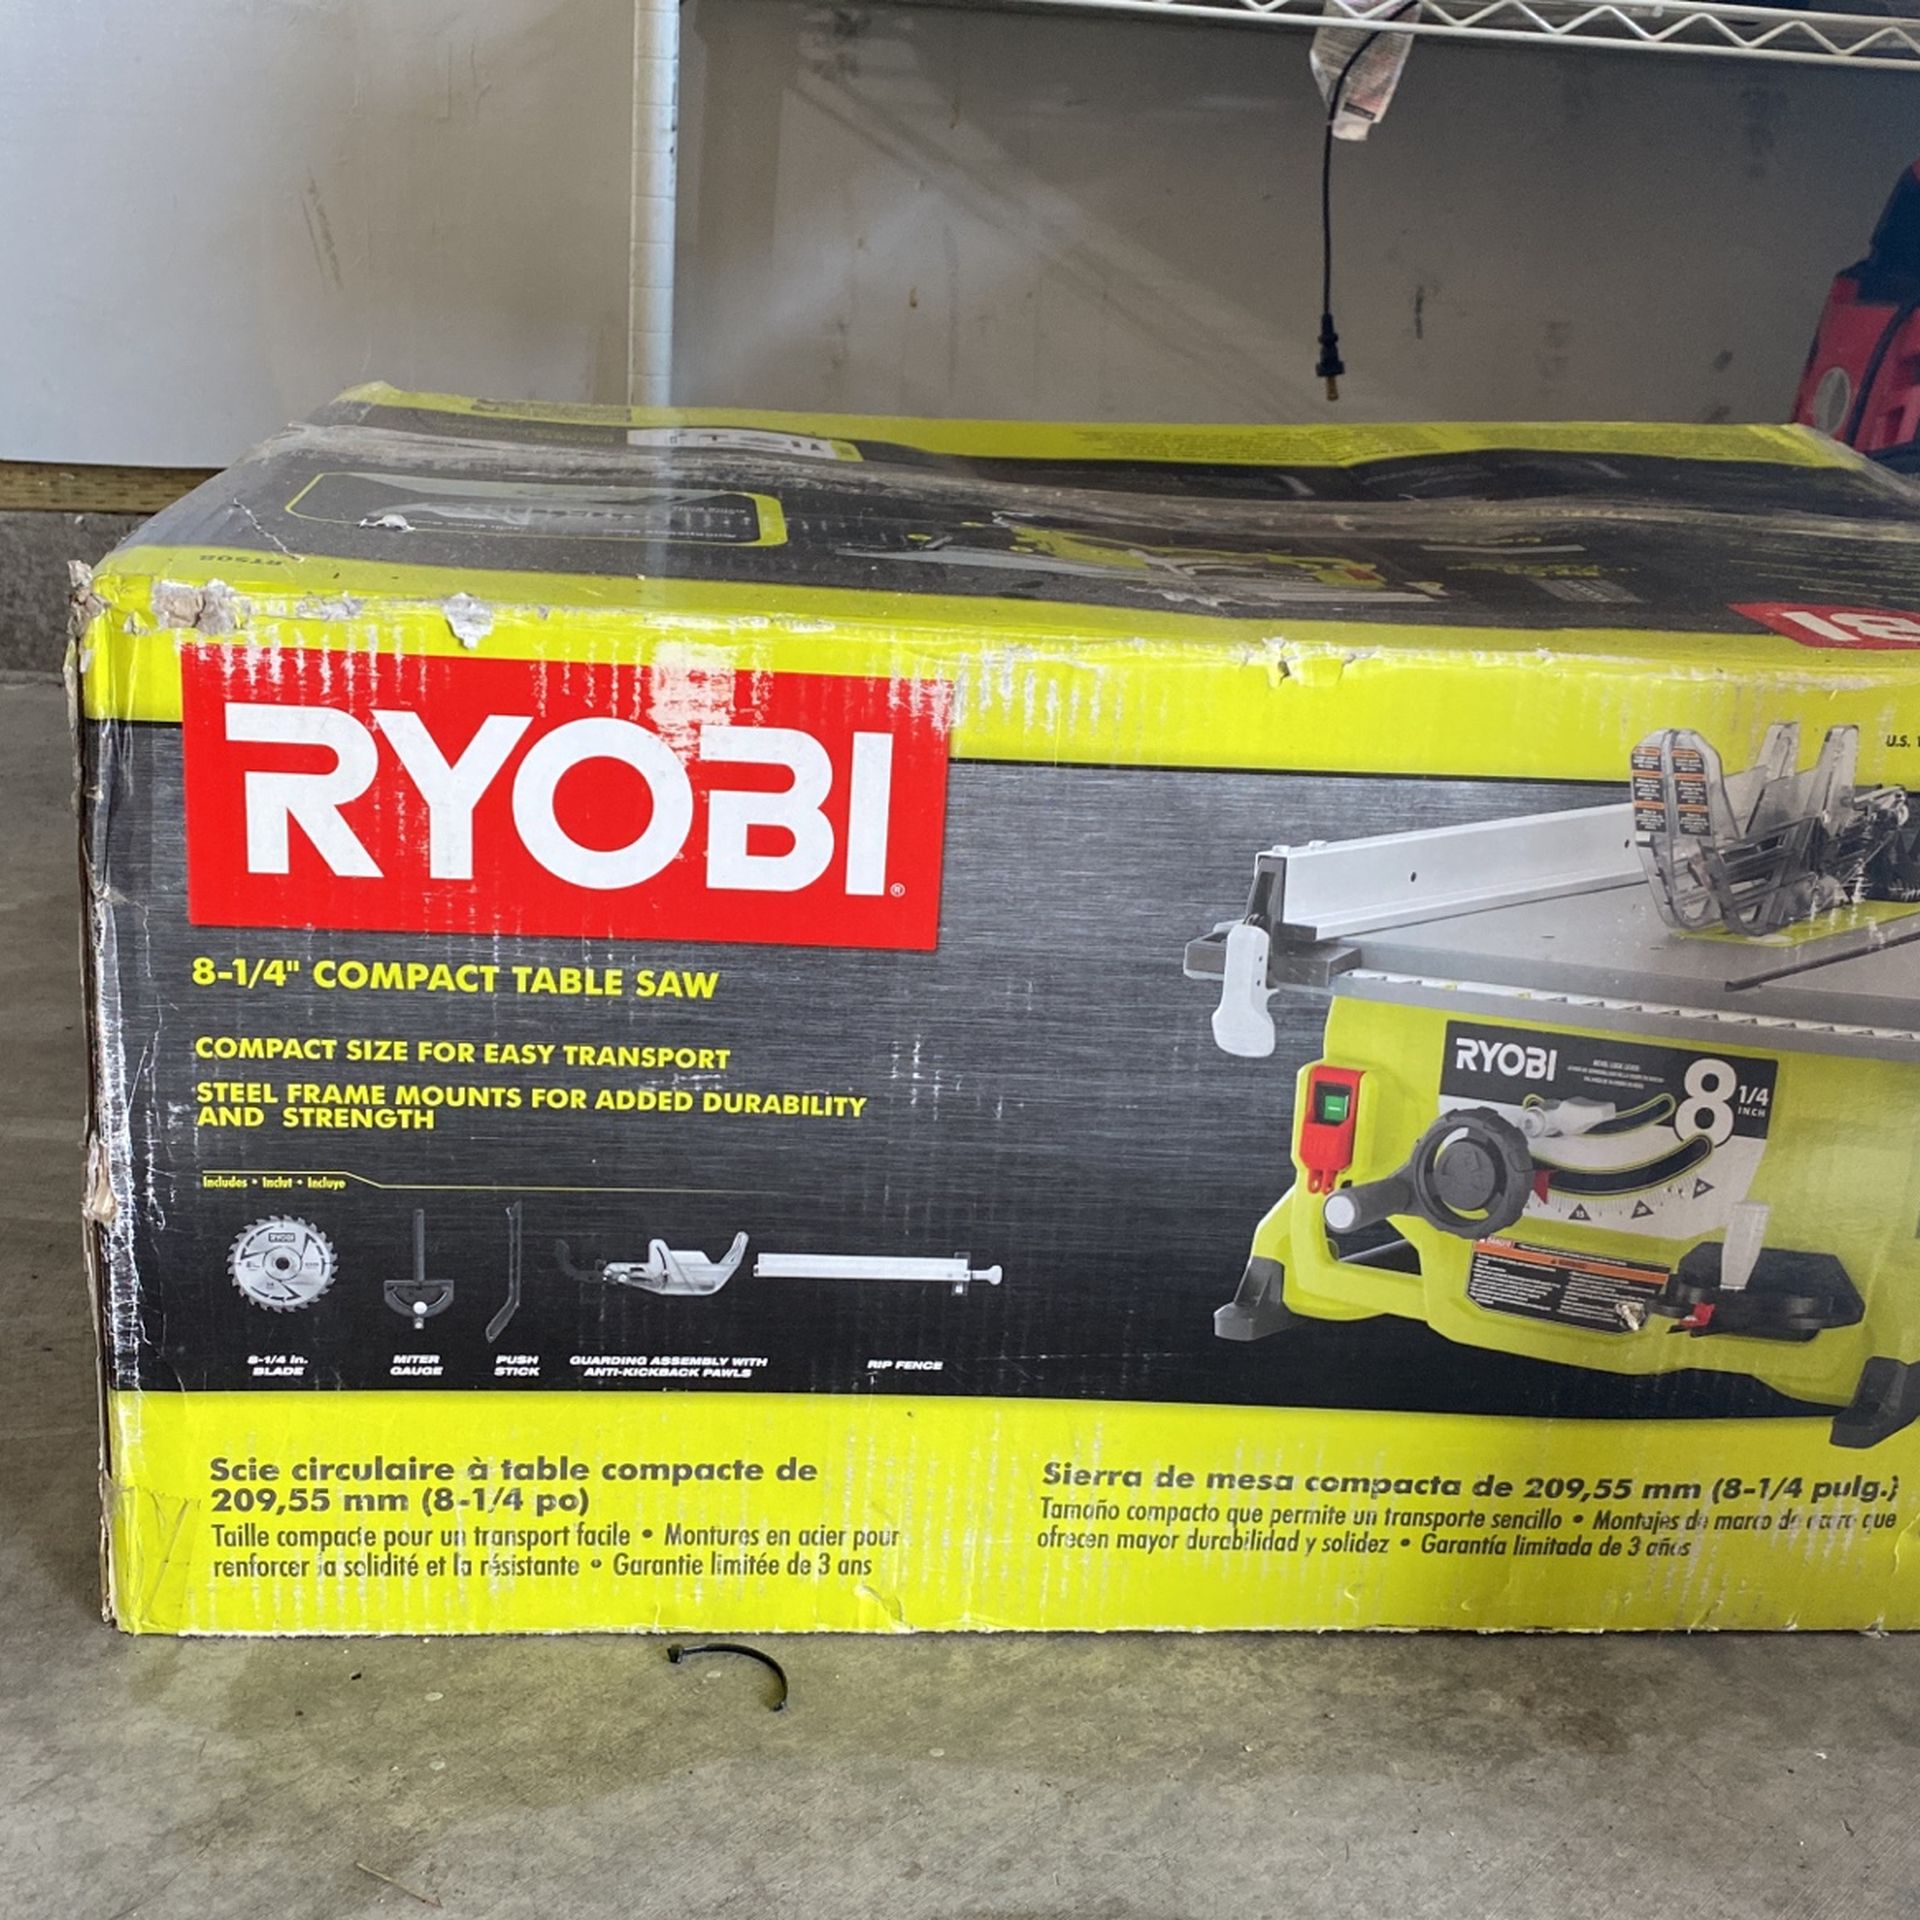 RYOBI COMPACT TABLE SAW 